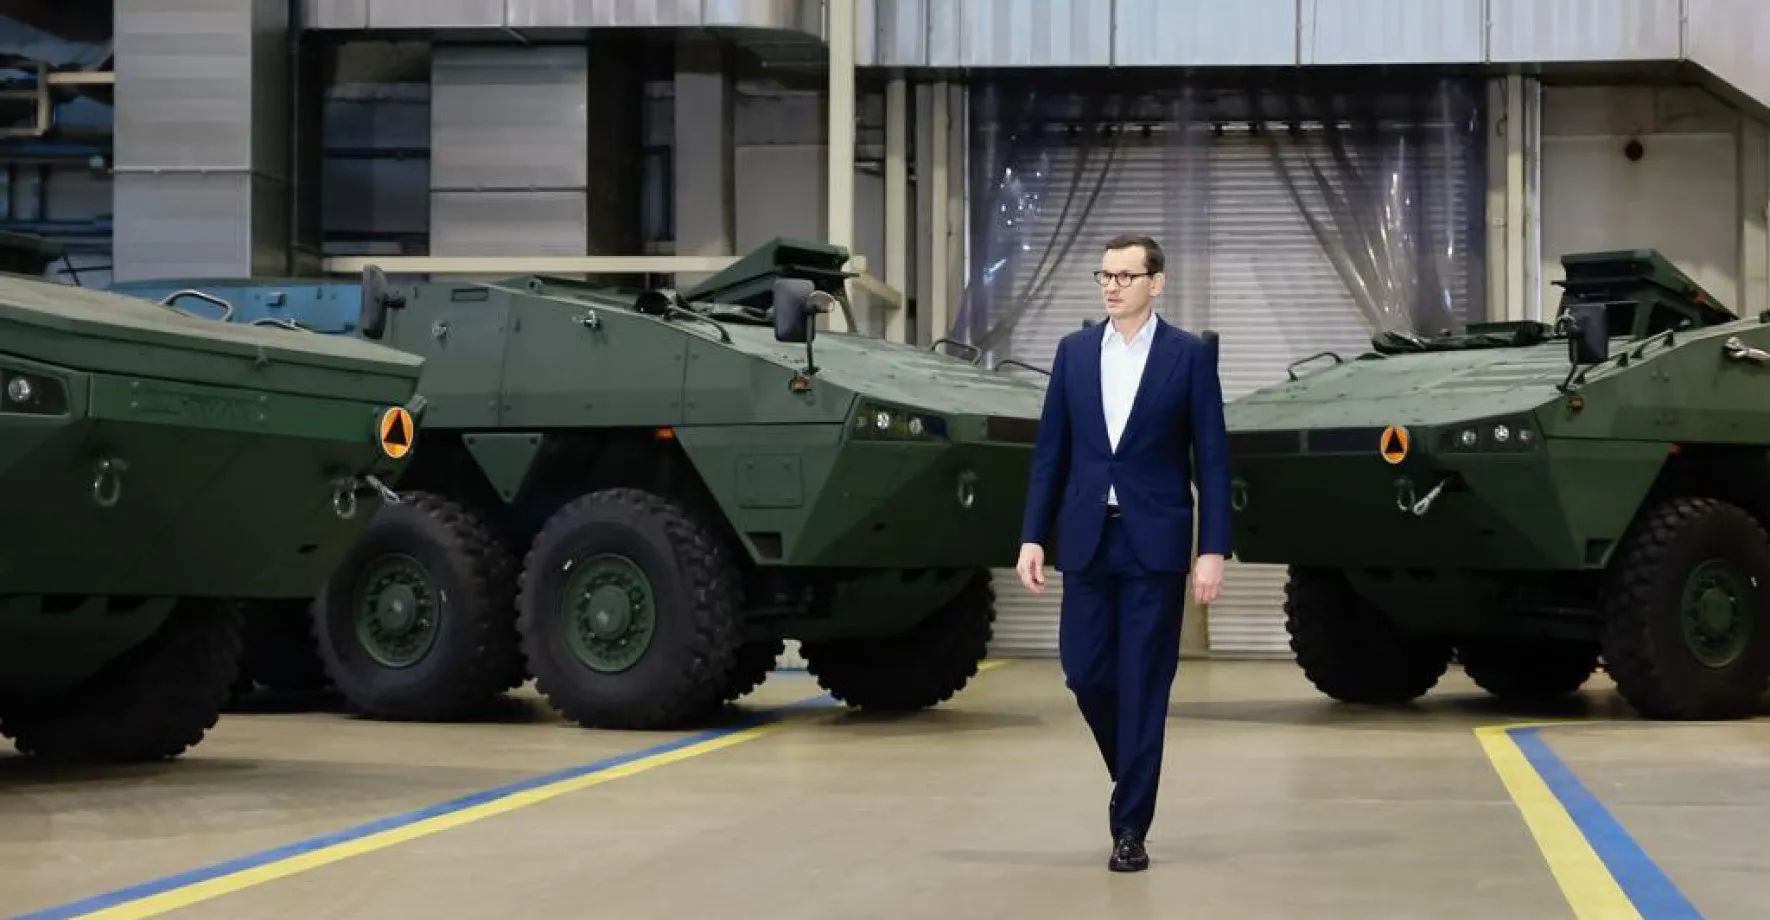 Ukrajina si objednala v Polsku 100 bojových vozidel Rosomak